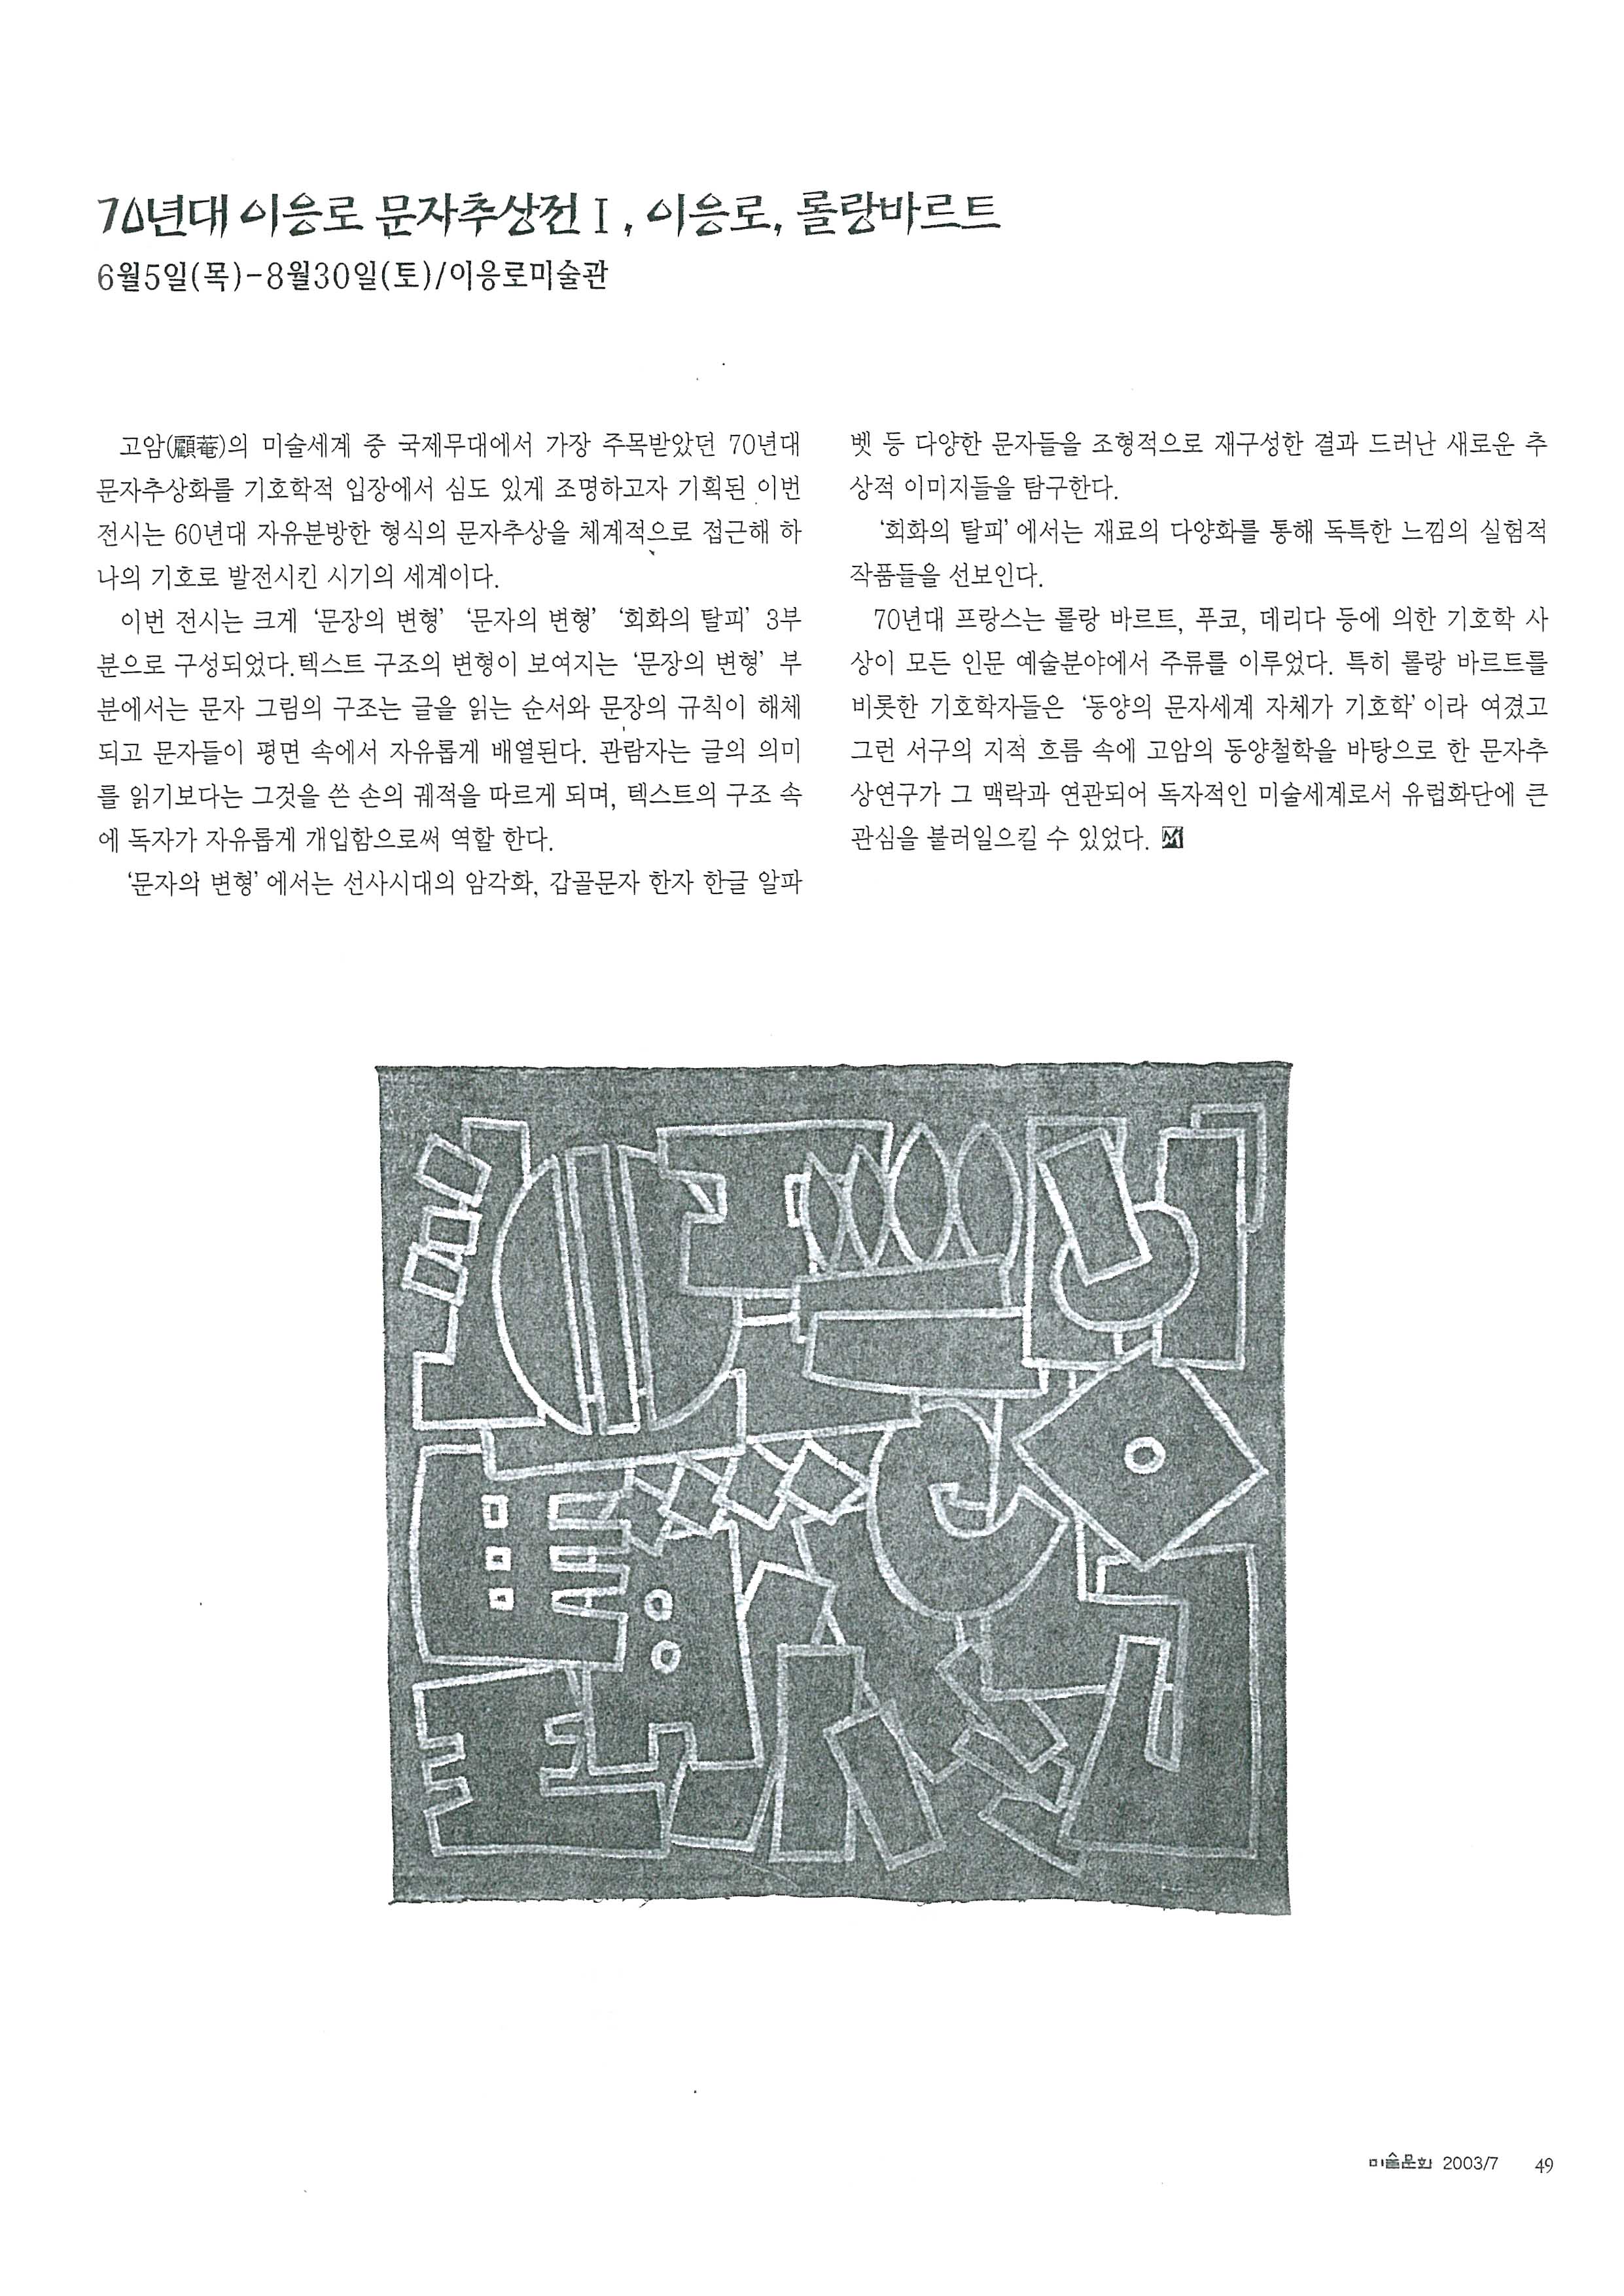 「70년대 이응노 문자추상전 I, 이응노, 롤랑바르트」, 『미술문화』